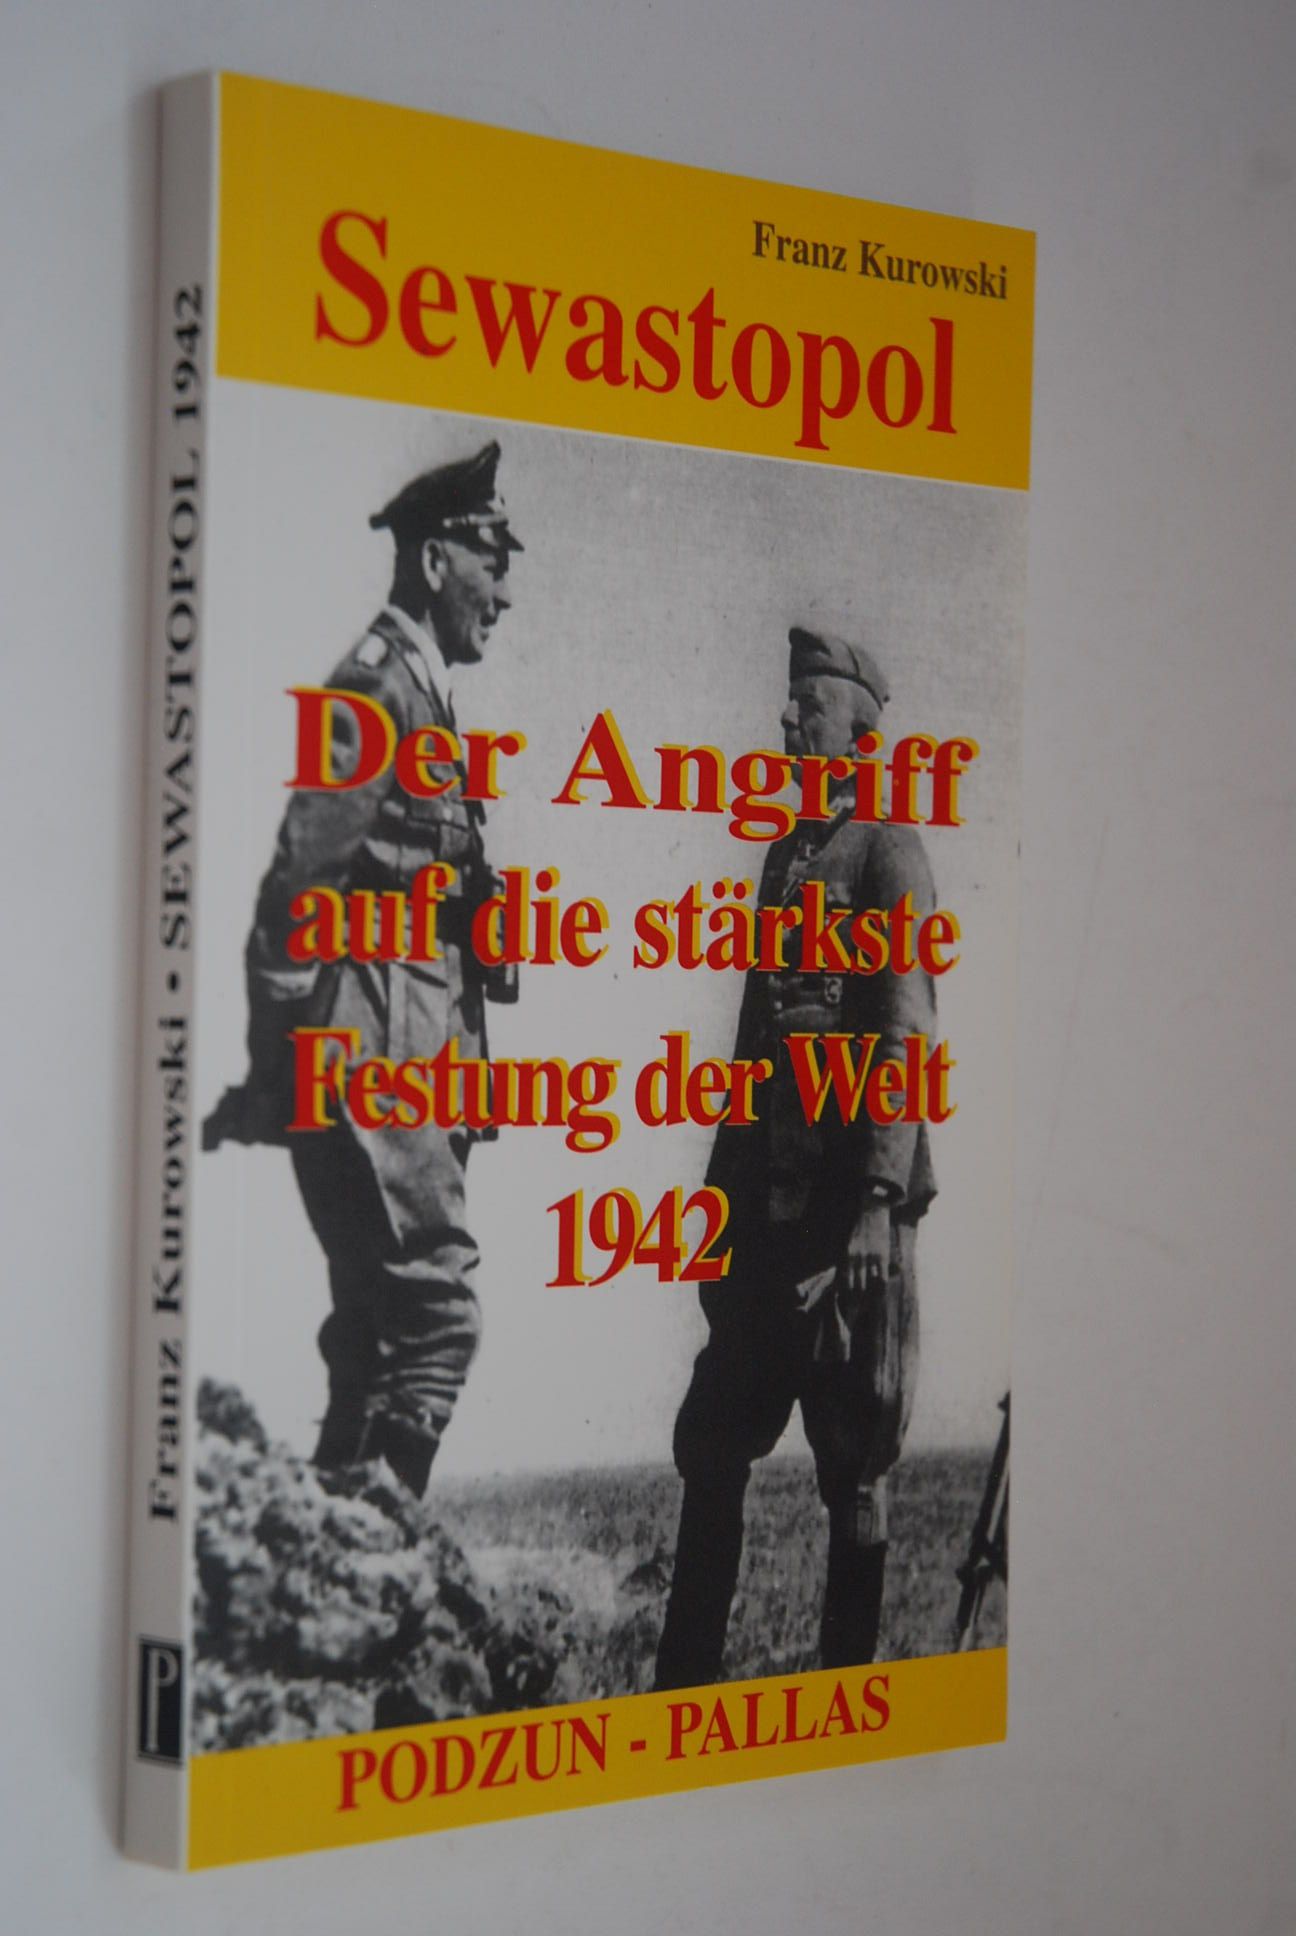 Sewastopol: der Angriff auf die stärkste Festung der Welt 1942. - Kurowski, Franz